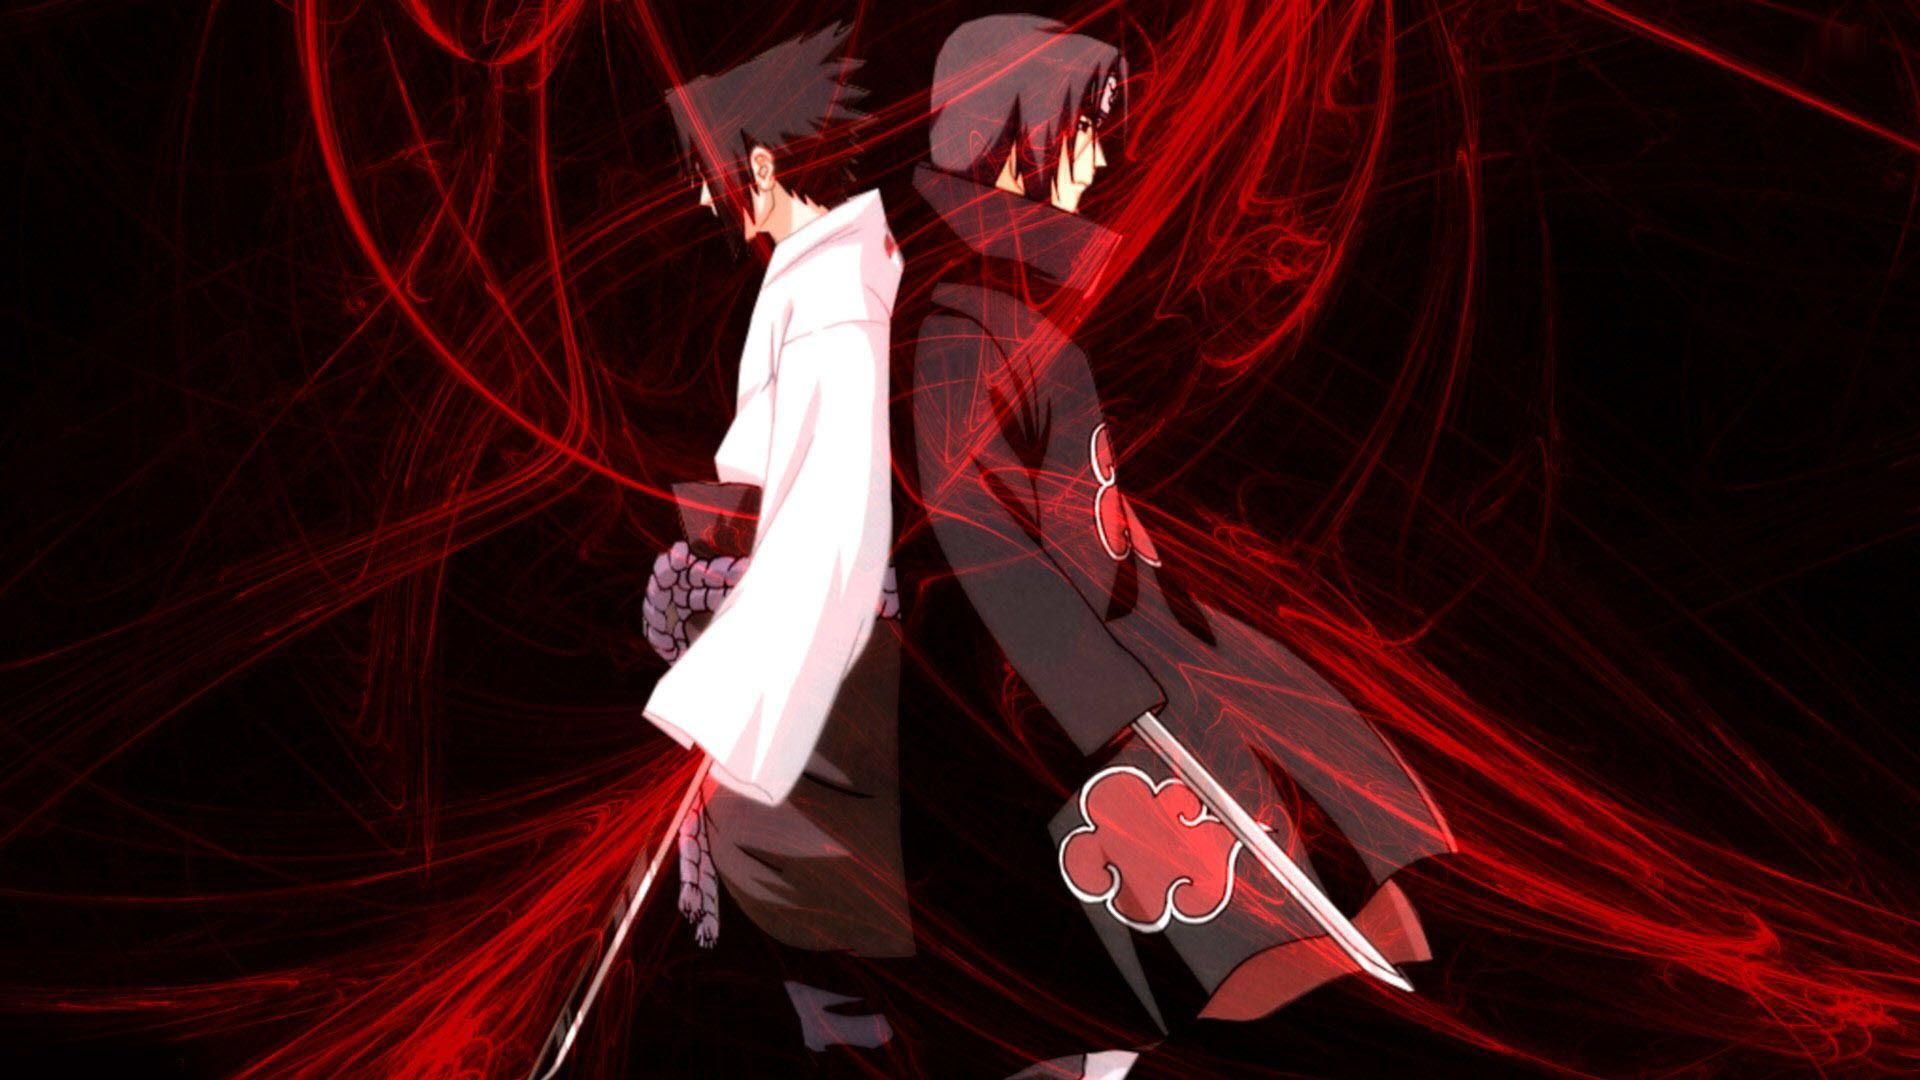 Itachi: Itachi Uchiha - một trong những nhân vật được yêu thích nhất của bộ truyện Naruto! Ngoài khả năng siêu phàm và tài năng chiến đấu, Itachi còn có một trái tim đầy tình yêu thương và sự tự trọng. Hãy xem hình ảnh liên quan đến Itachi và khám phá thêm về nhân vật này!